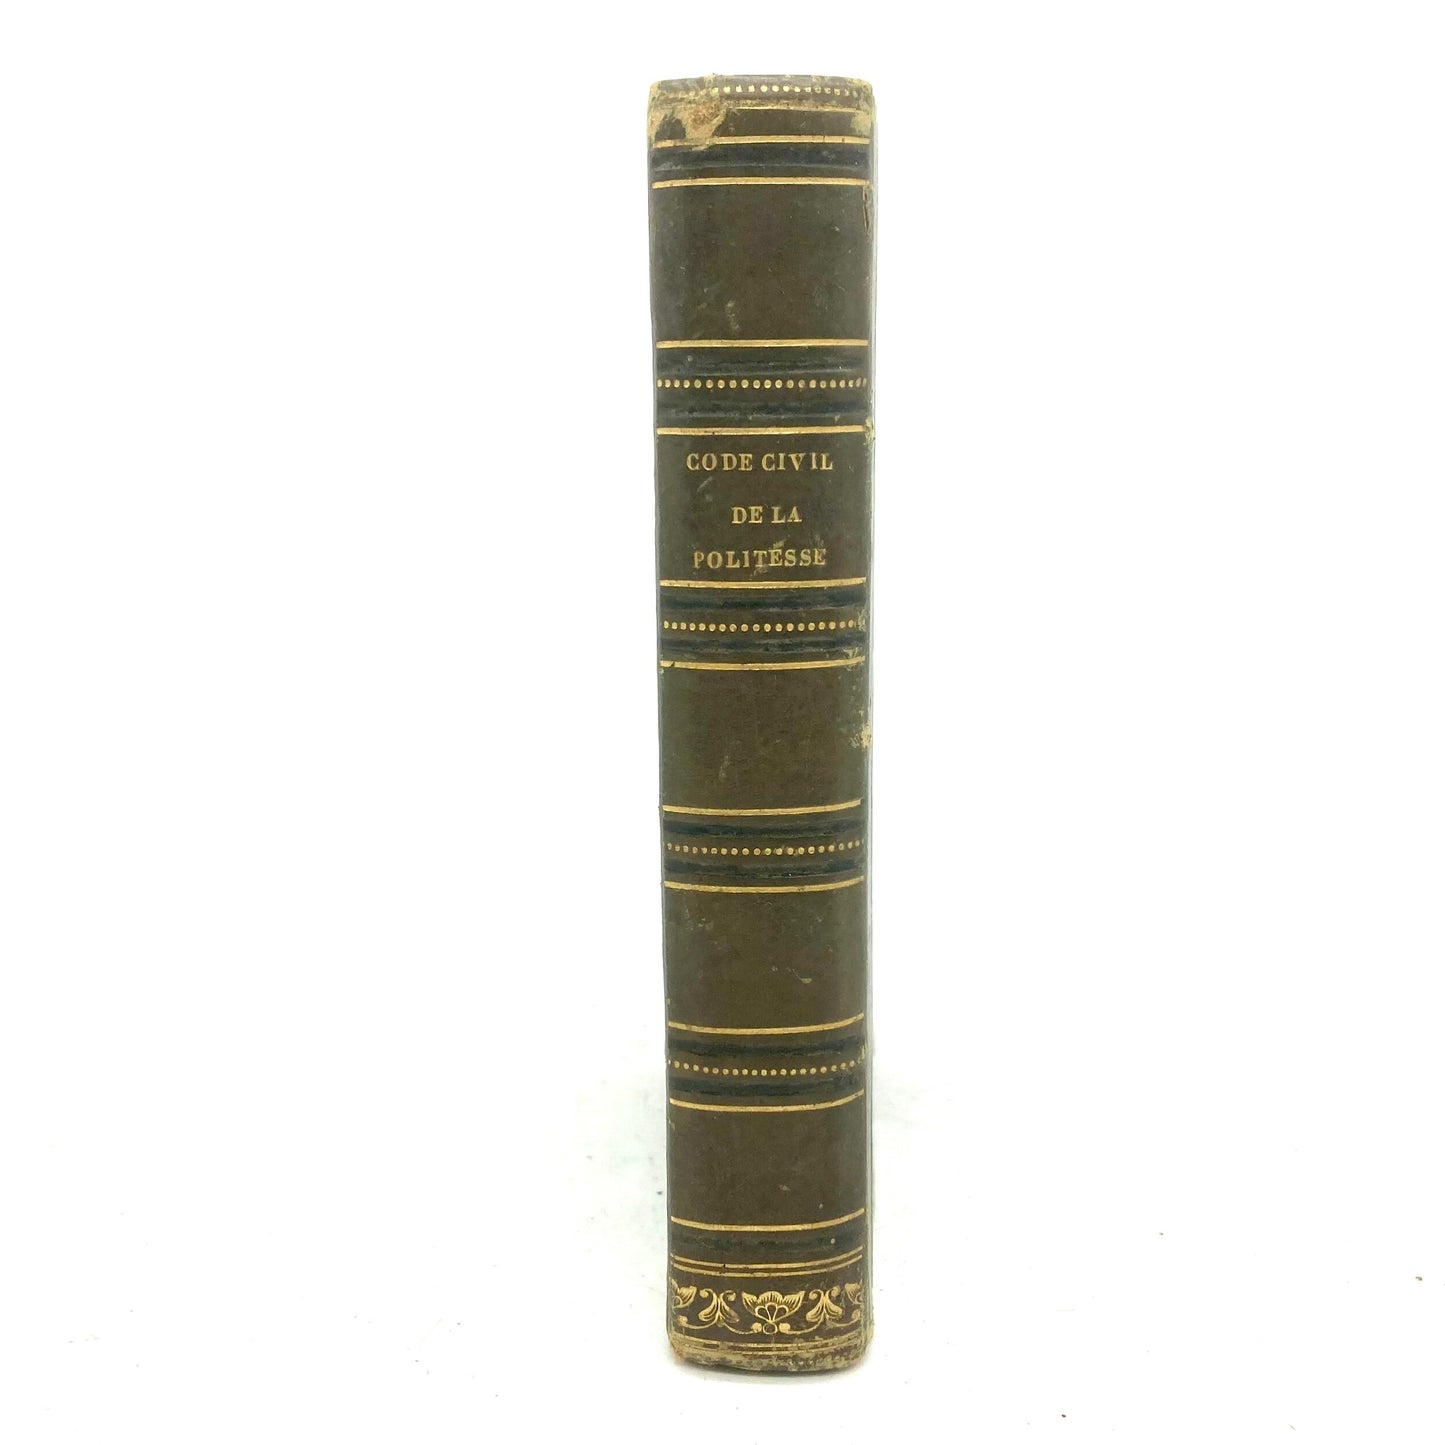 RAISSON, Horace "Code Civile, Manuel Complet de la Politesse" [J.P. Roret, 1828] - Buzz Bookstore